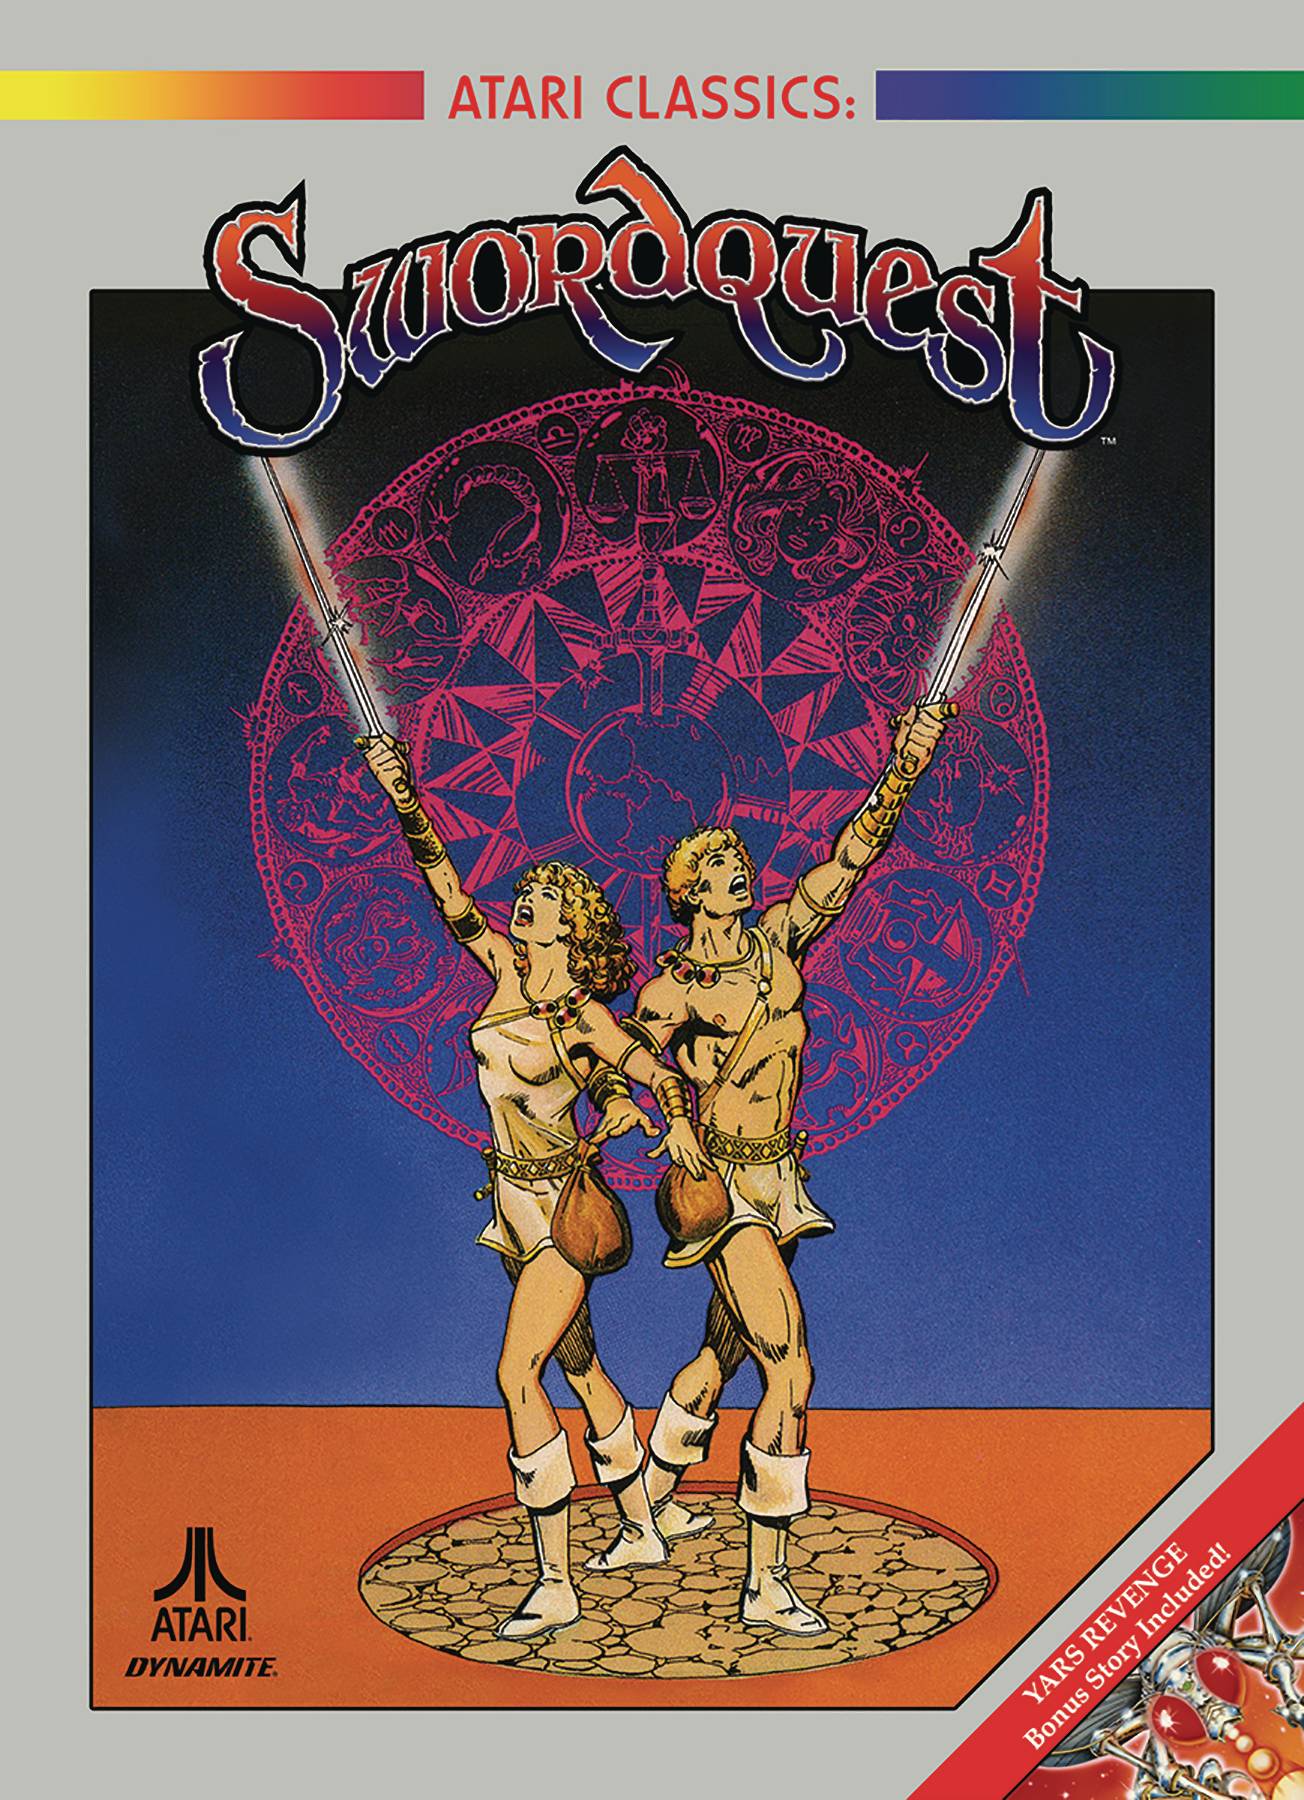 Atari Classics Swordquest Graphic Novel